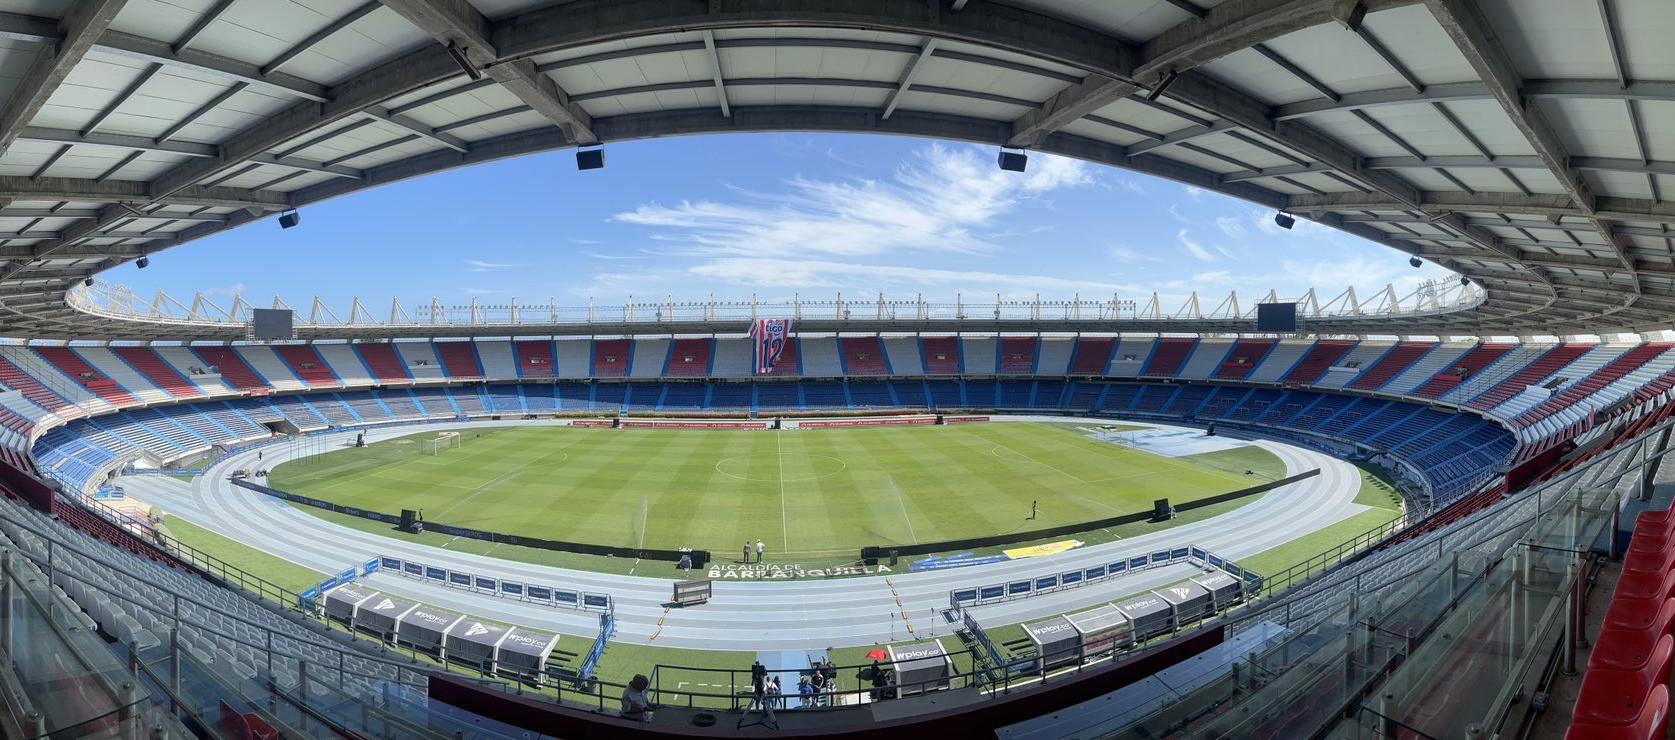 Estadio Metropolitano Roberto Meléndez, sede de los partidos de la Selección Colombia.